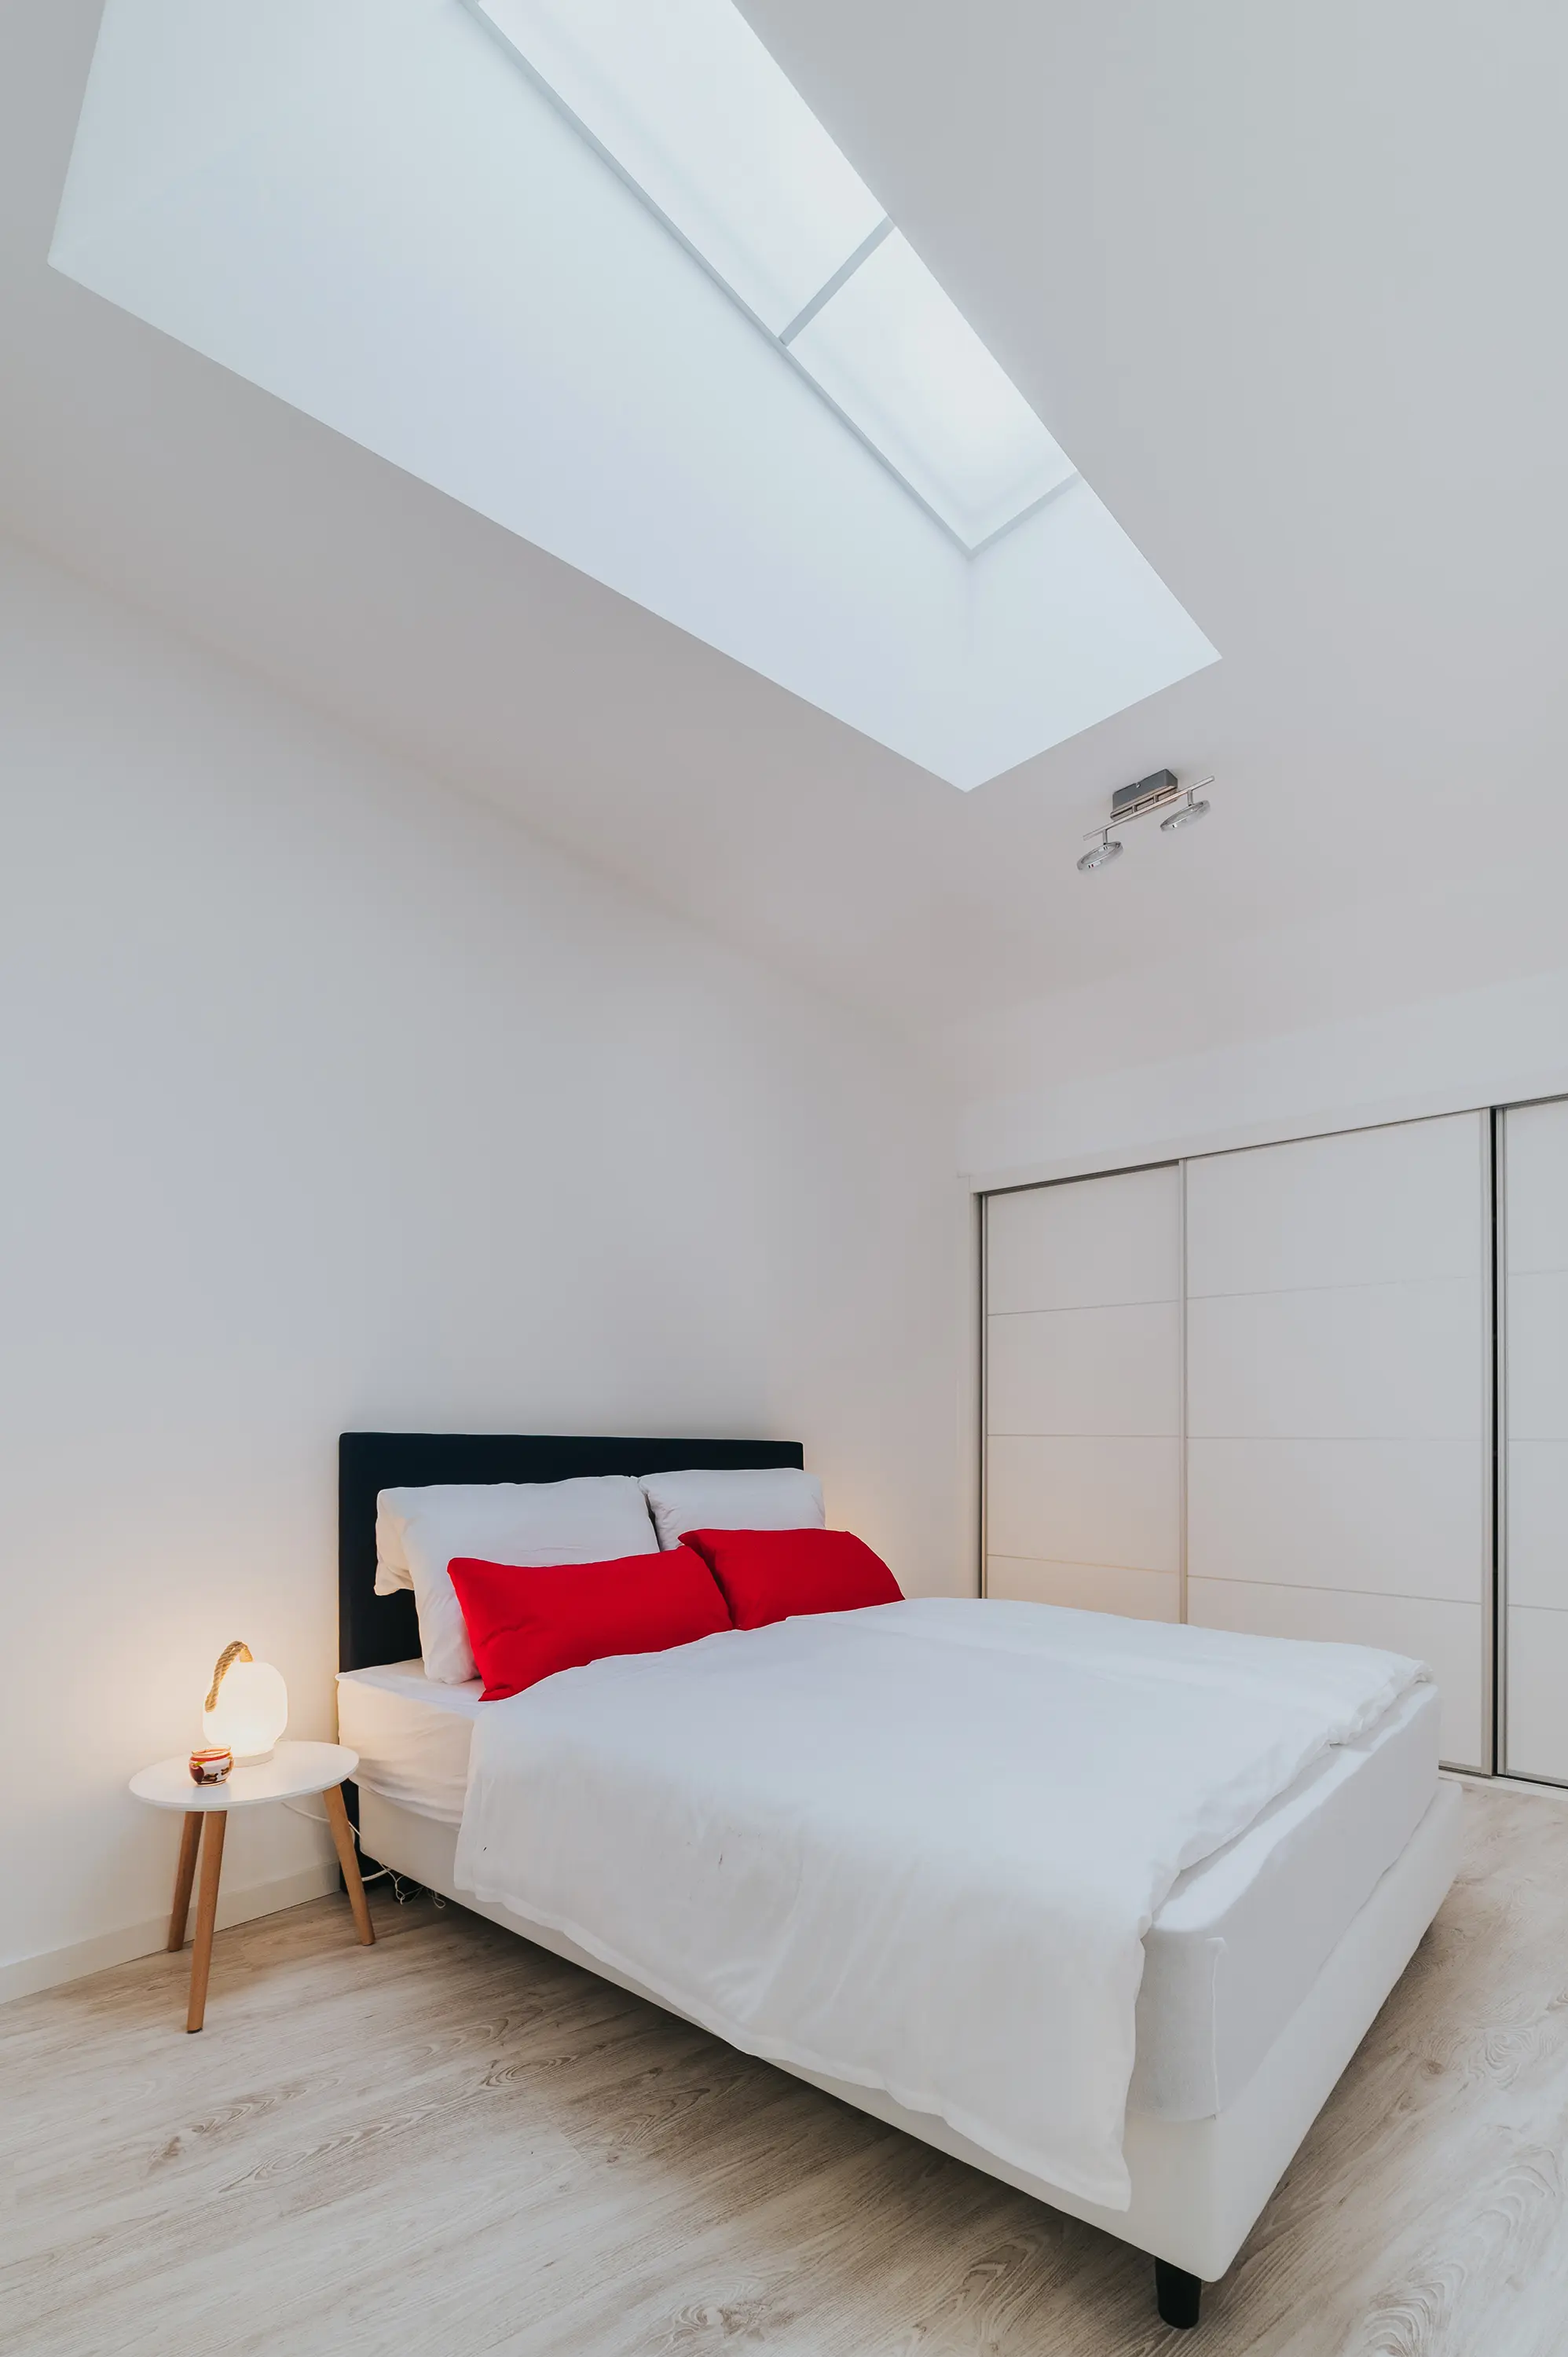 Fotografia de um quarto num alojamento Airbnb